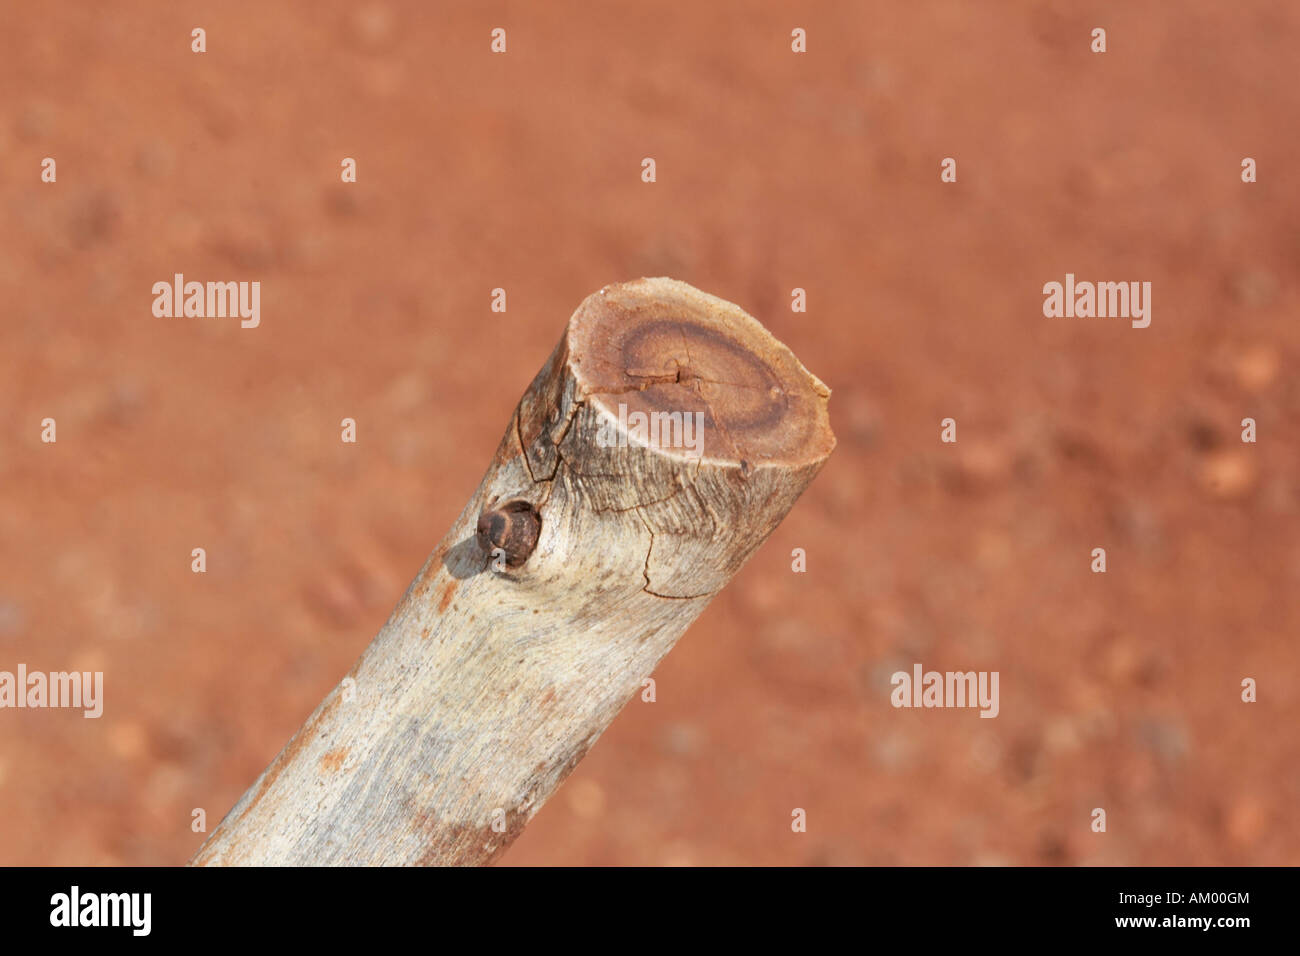 D'un perchoir sectionnée gum tree snappy gum tree avec rupture même parc national de Karijini de Pilbara en Australie occidentale WA Banque D'Images